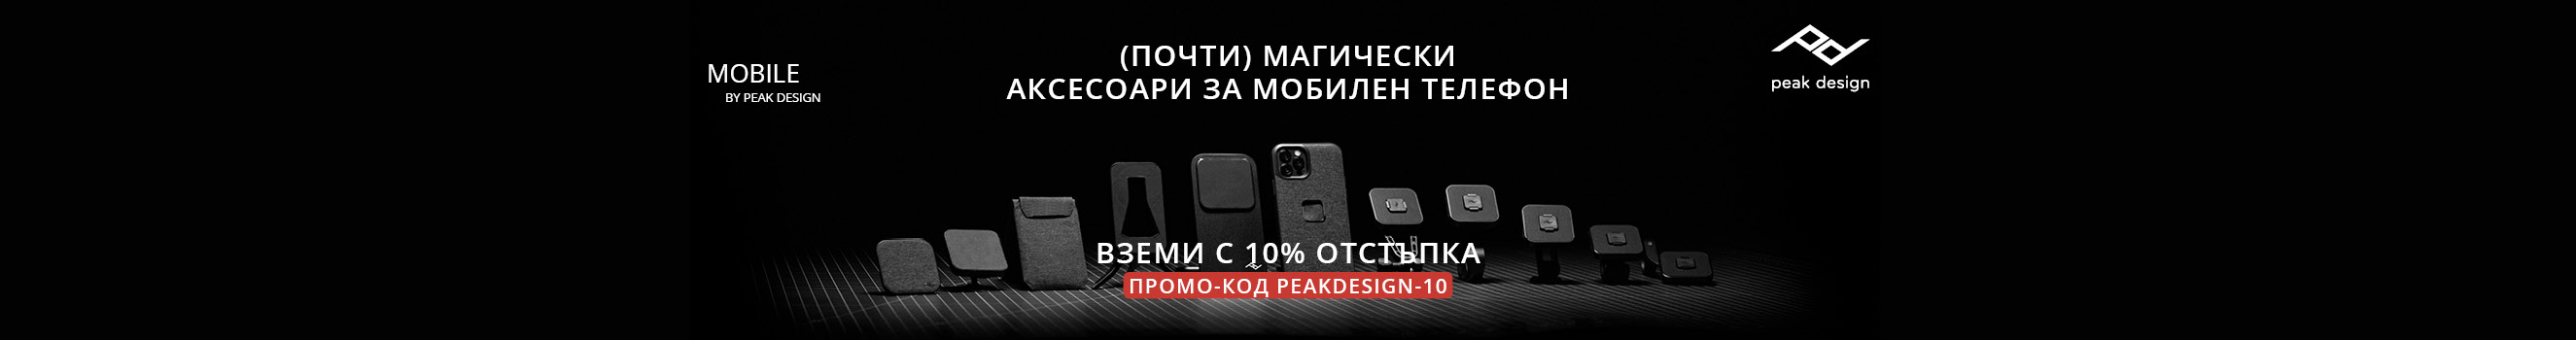 10% отстъпка за серия аксесоари за смартфон Peak Design Mobile в магазини ФотоСинтезис 